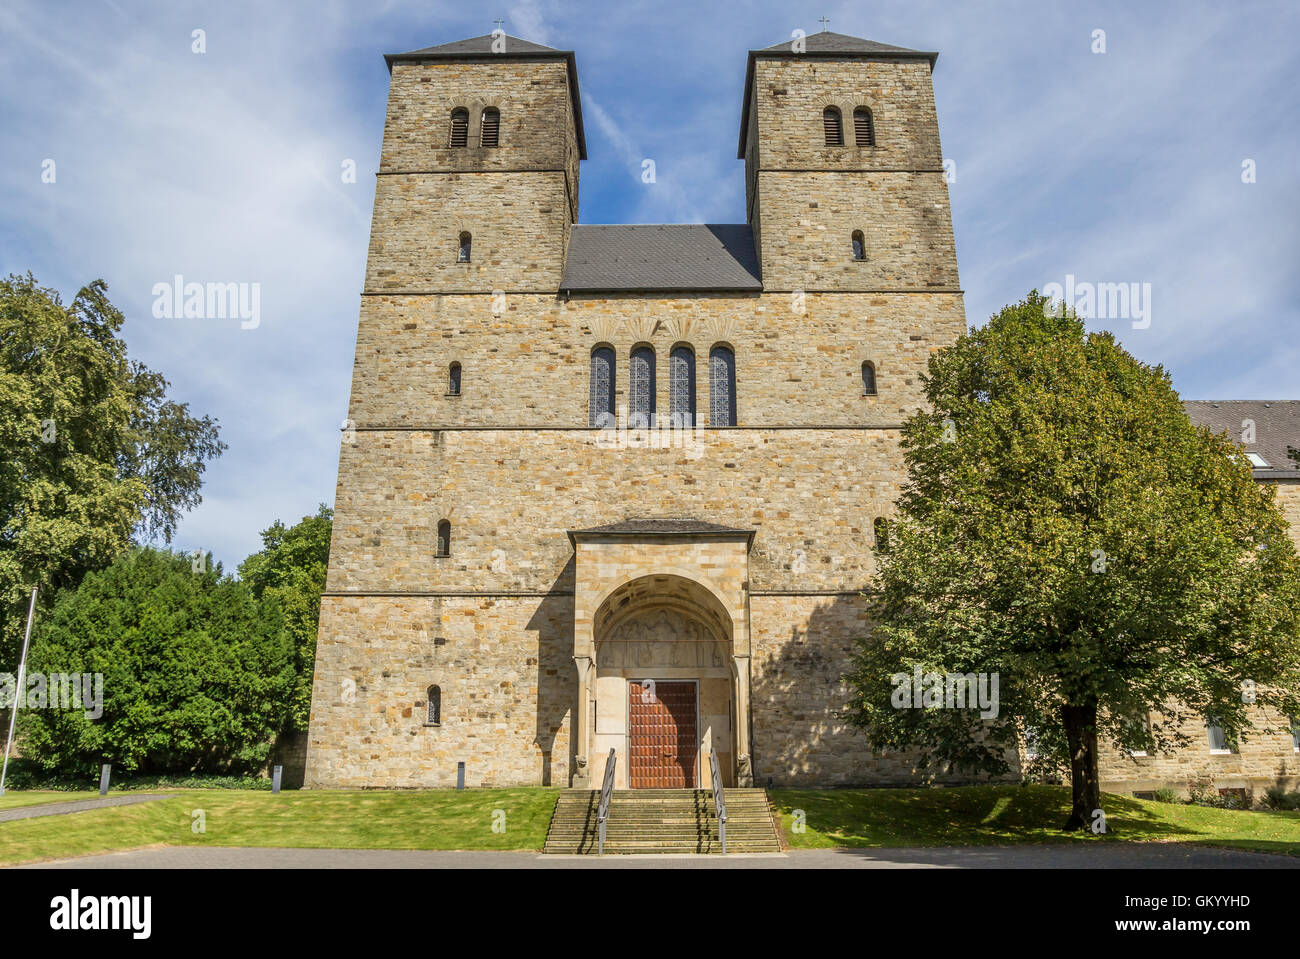 Entrance of the Gerleve Abbey near Coesfeld, Germany Stock Photo